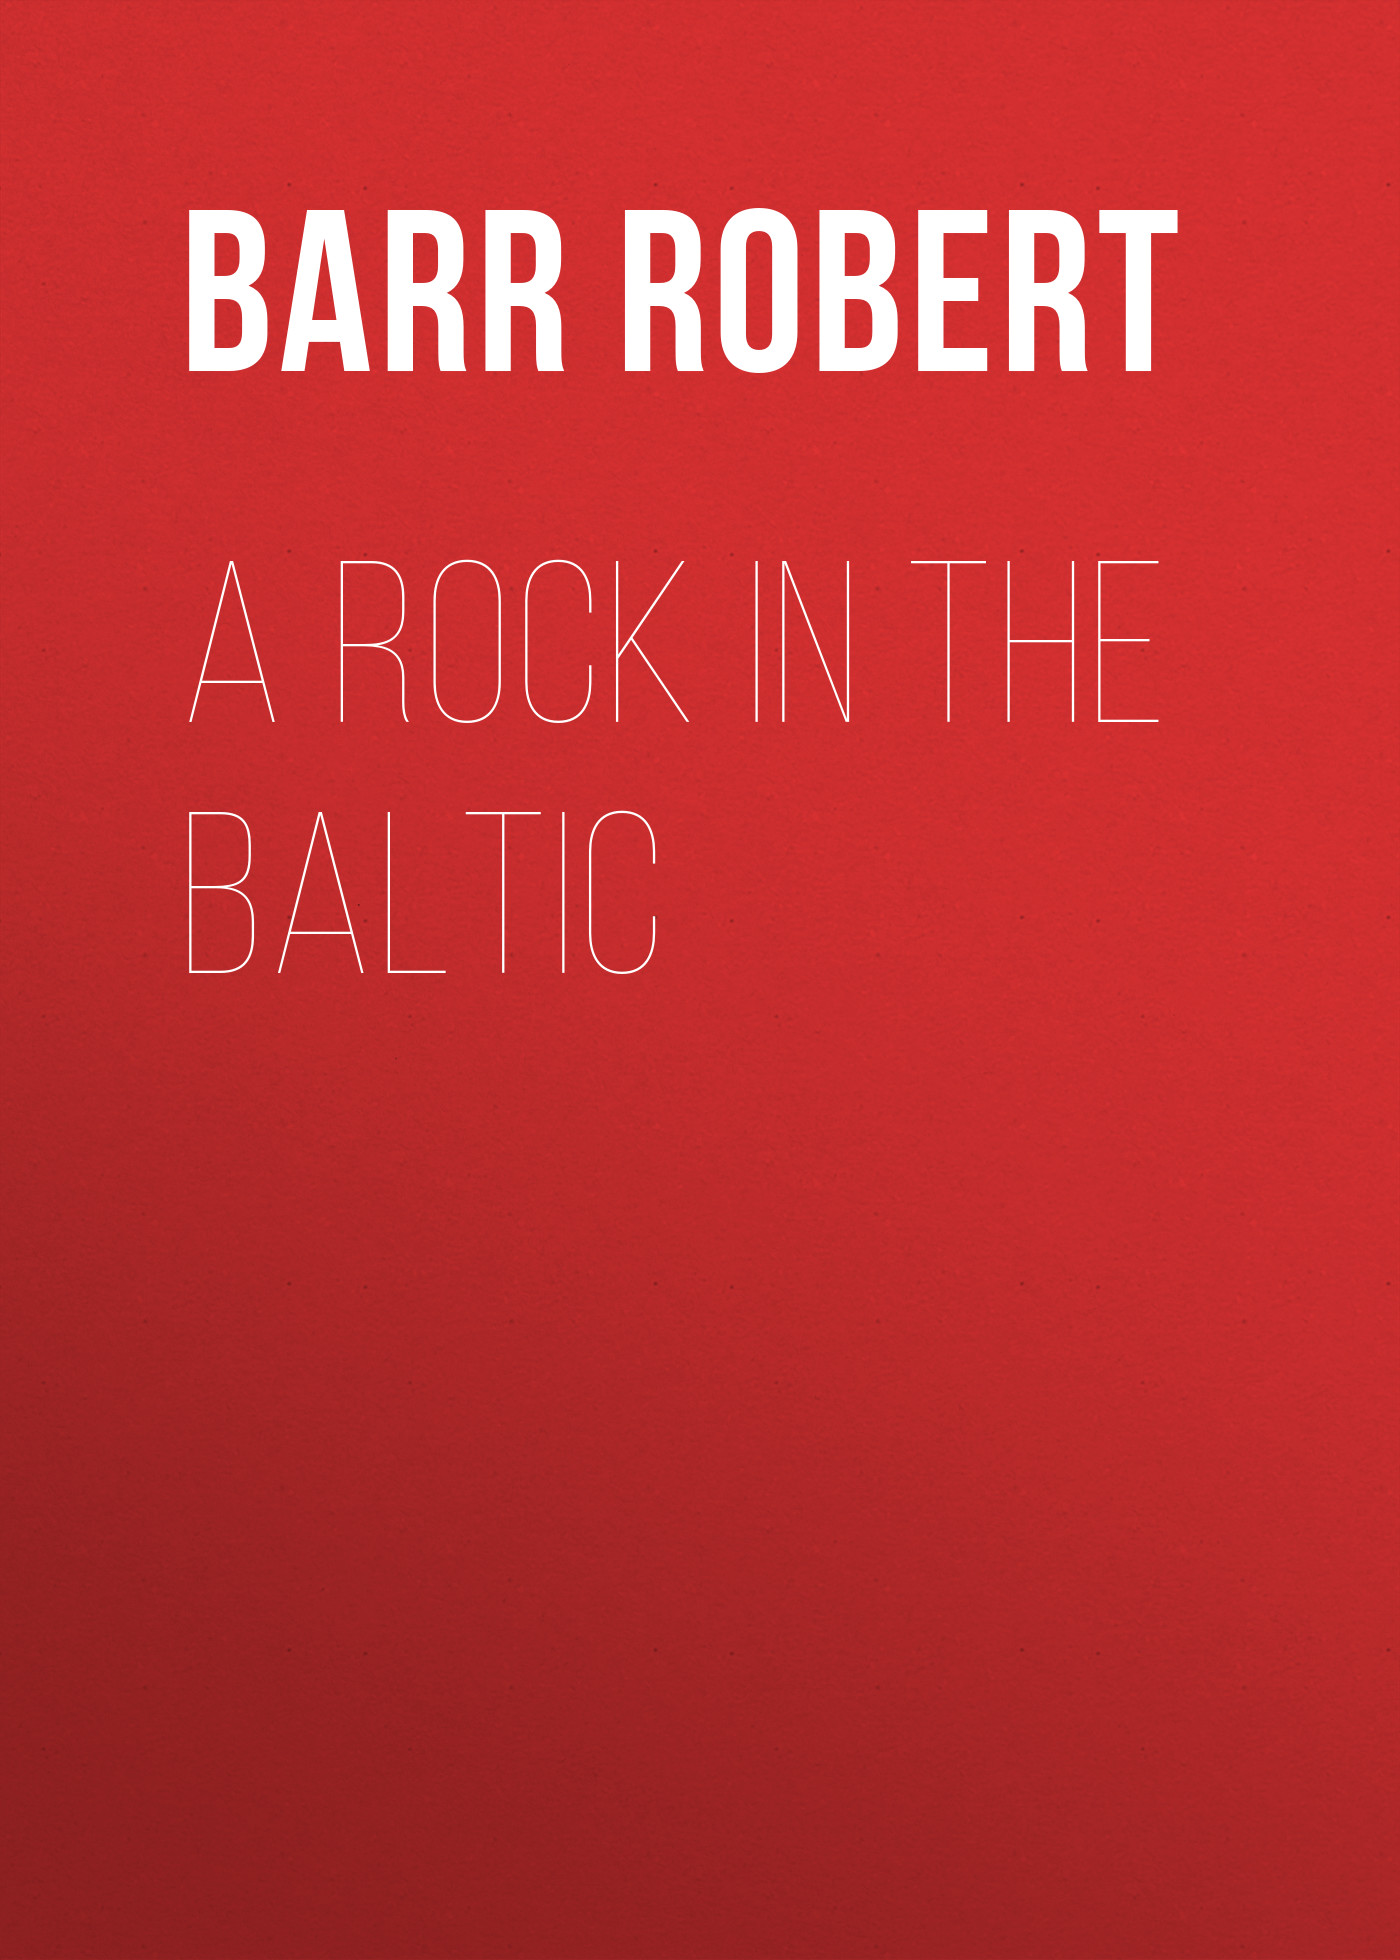 Книга A Rock in the Baltic из серии , созданная Robert Barr, может относится к жанру Зарубежная классика, Зарубежная старинная литература. Стоимость электронной книги A Rock in the Baltic с идентификатором 36366854 составляет 0 руб.